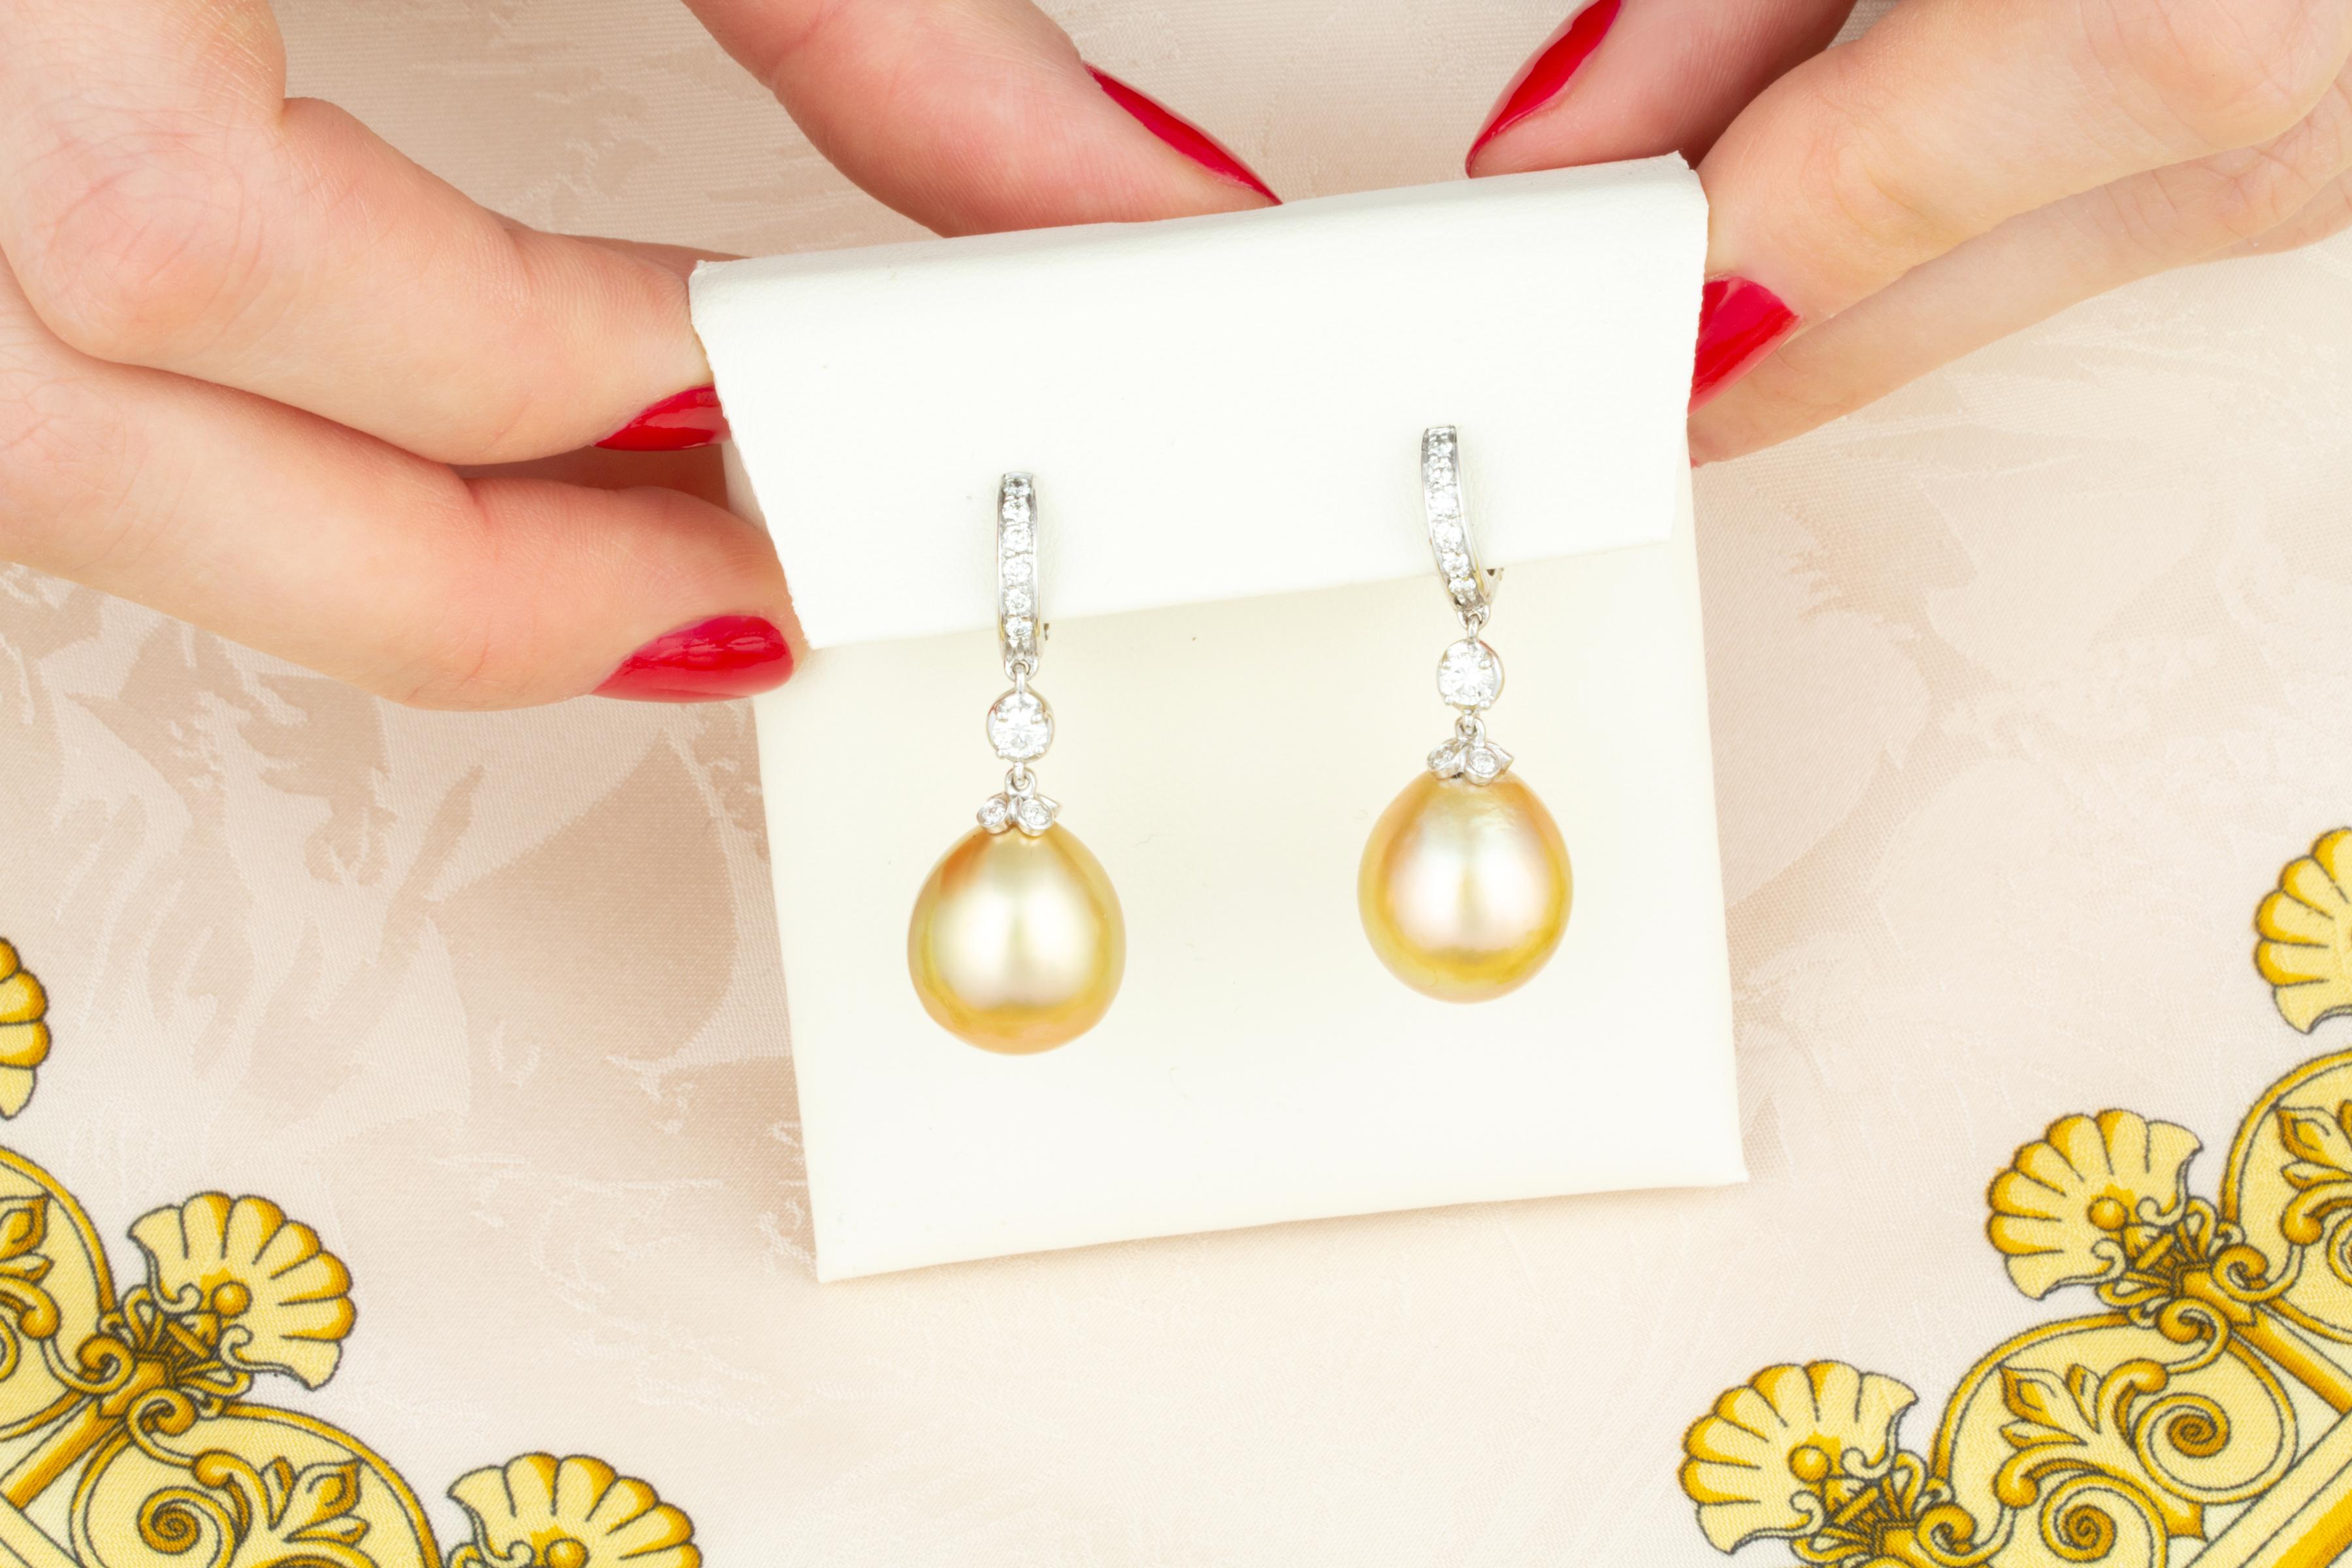 Les boucles d'oreilles pendantes en perles dorées et diamants sont composées de deux perles de 15 x 13 mm de nacre de qualité, d'un bel éclat et d'une couleur dorée intense.
Les perles sont suspendues à des anneaux sertis de diamants ronds en pavé